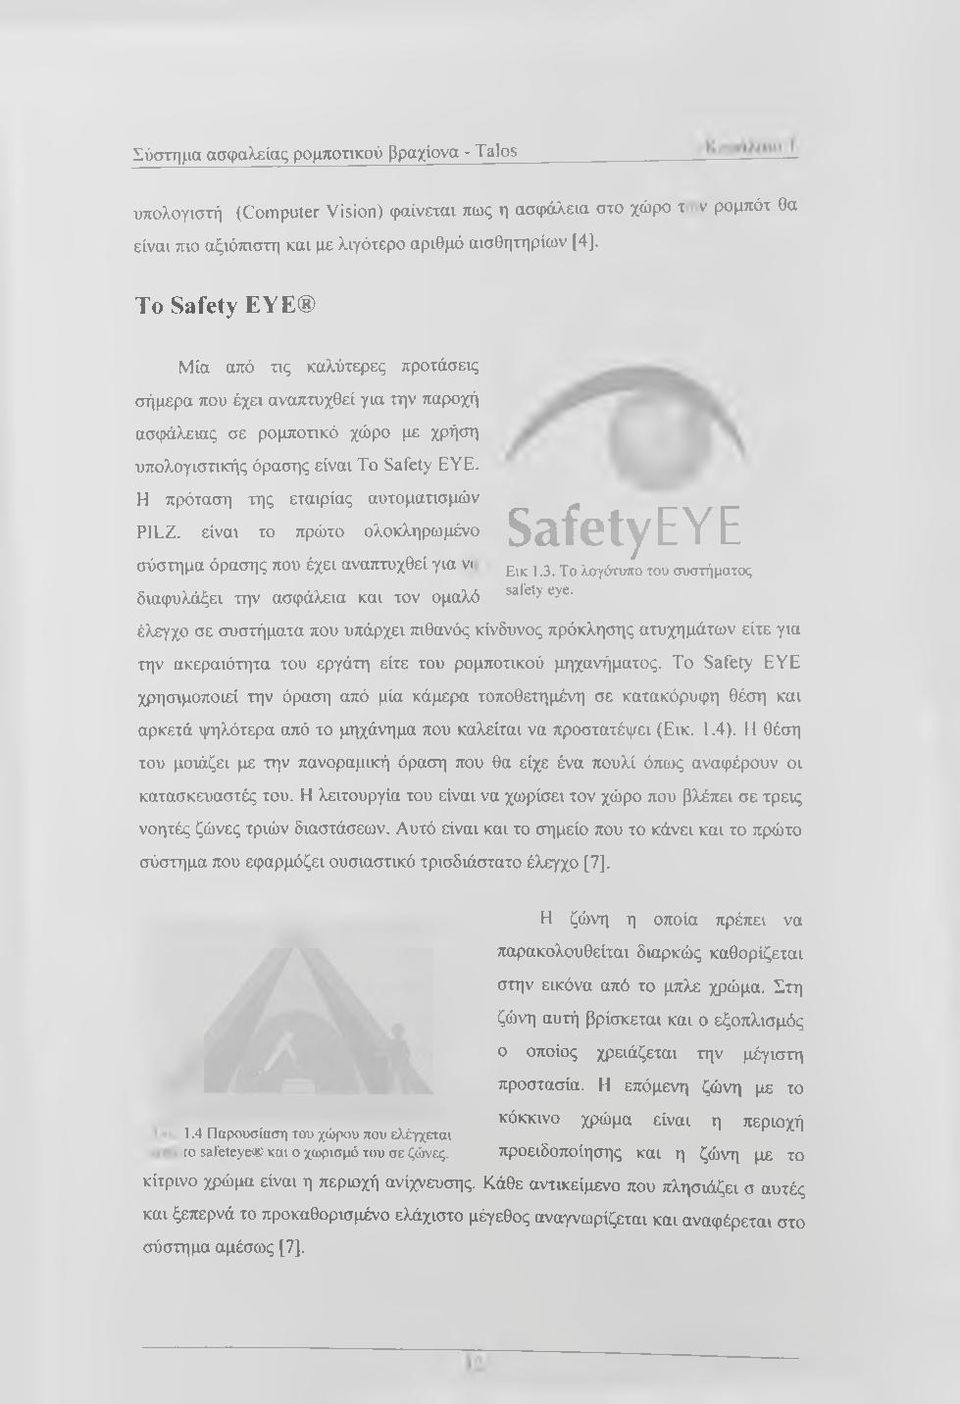 Η πρόταση της εταιρίας αυτοματισμών P1LZ. είναι το πρώτο ολοκληρωμένο σύστημα όρασης που έχει αναπτυχθεί για v( διαφυλάξει την ασφάλεια και τον ομαλό Safety EYE Εικ 1.3.